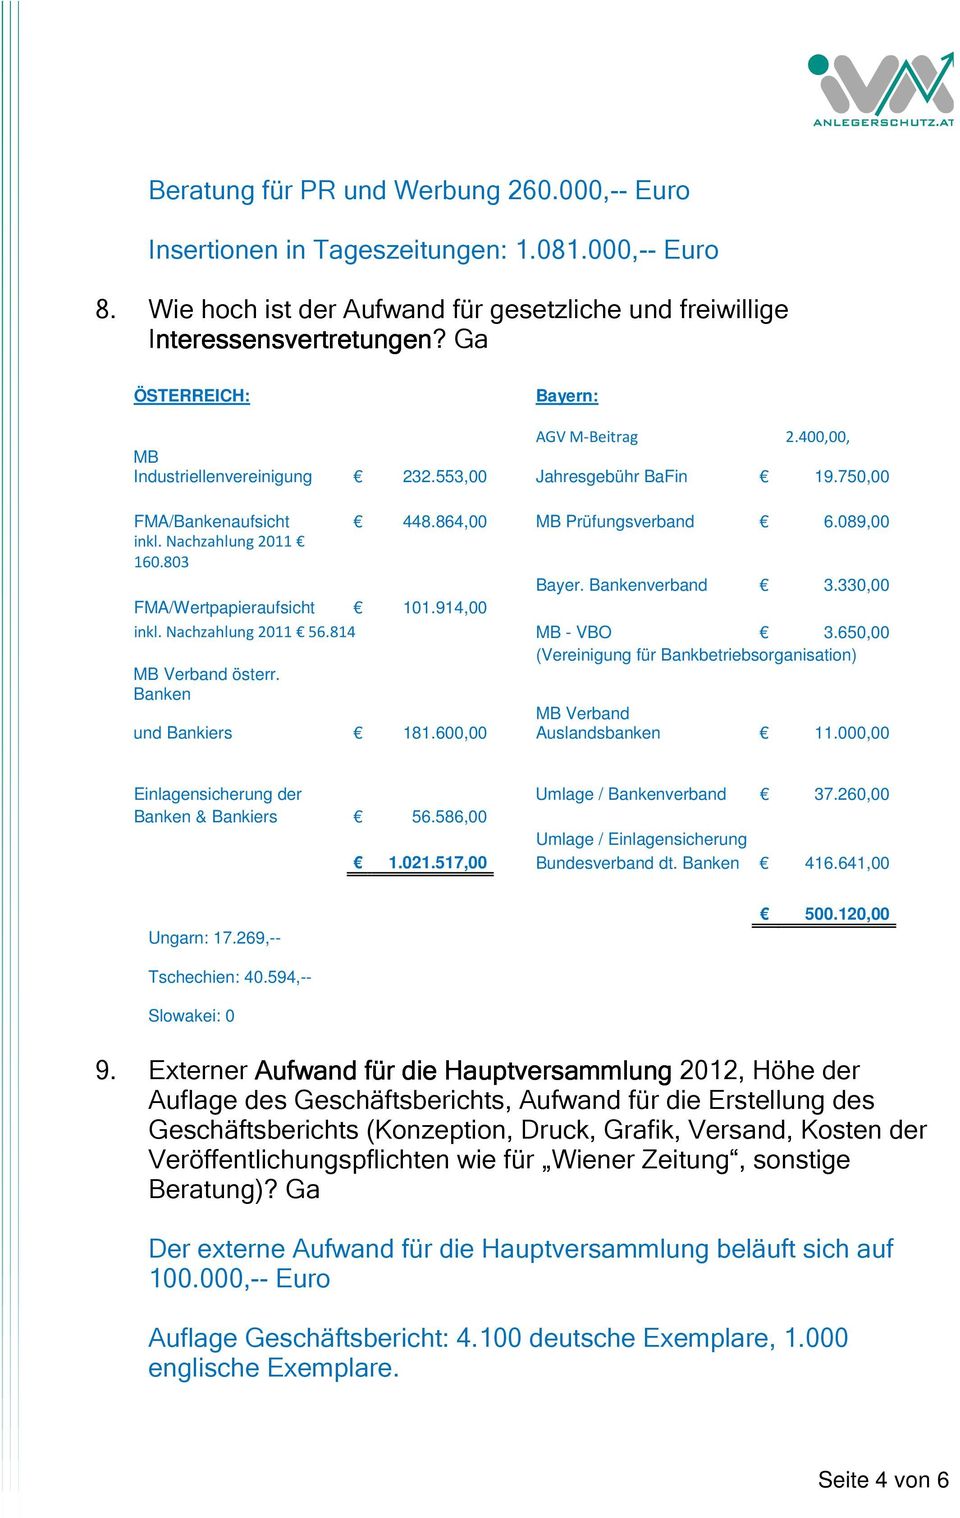 803 Bayer. Bankenverband 3.330,00 FMA/Wertpapieraufsicht 101.914,00 inkl. Nachzahlung 2011 56.814 MB - VBO 3.650,00 (Vereinigung für Bankbetriebsorganisation) MB Verband österr.